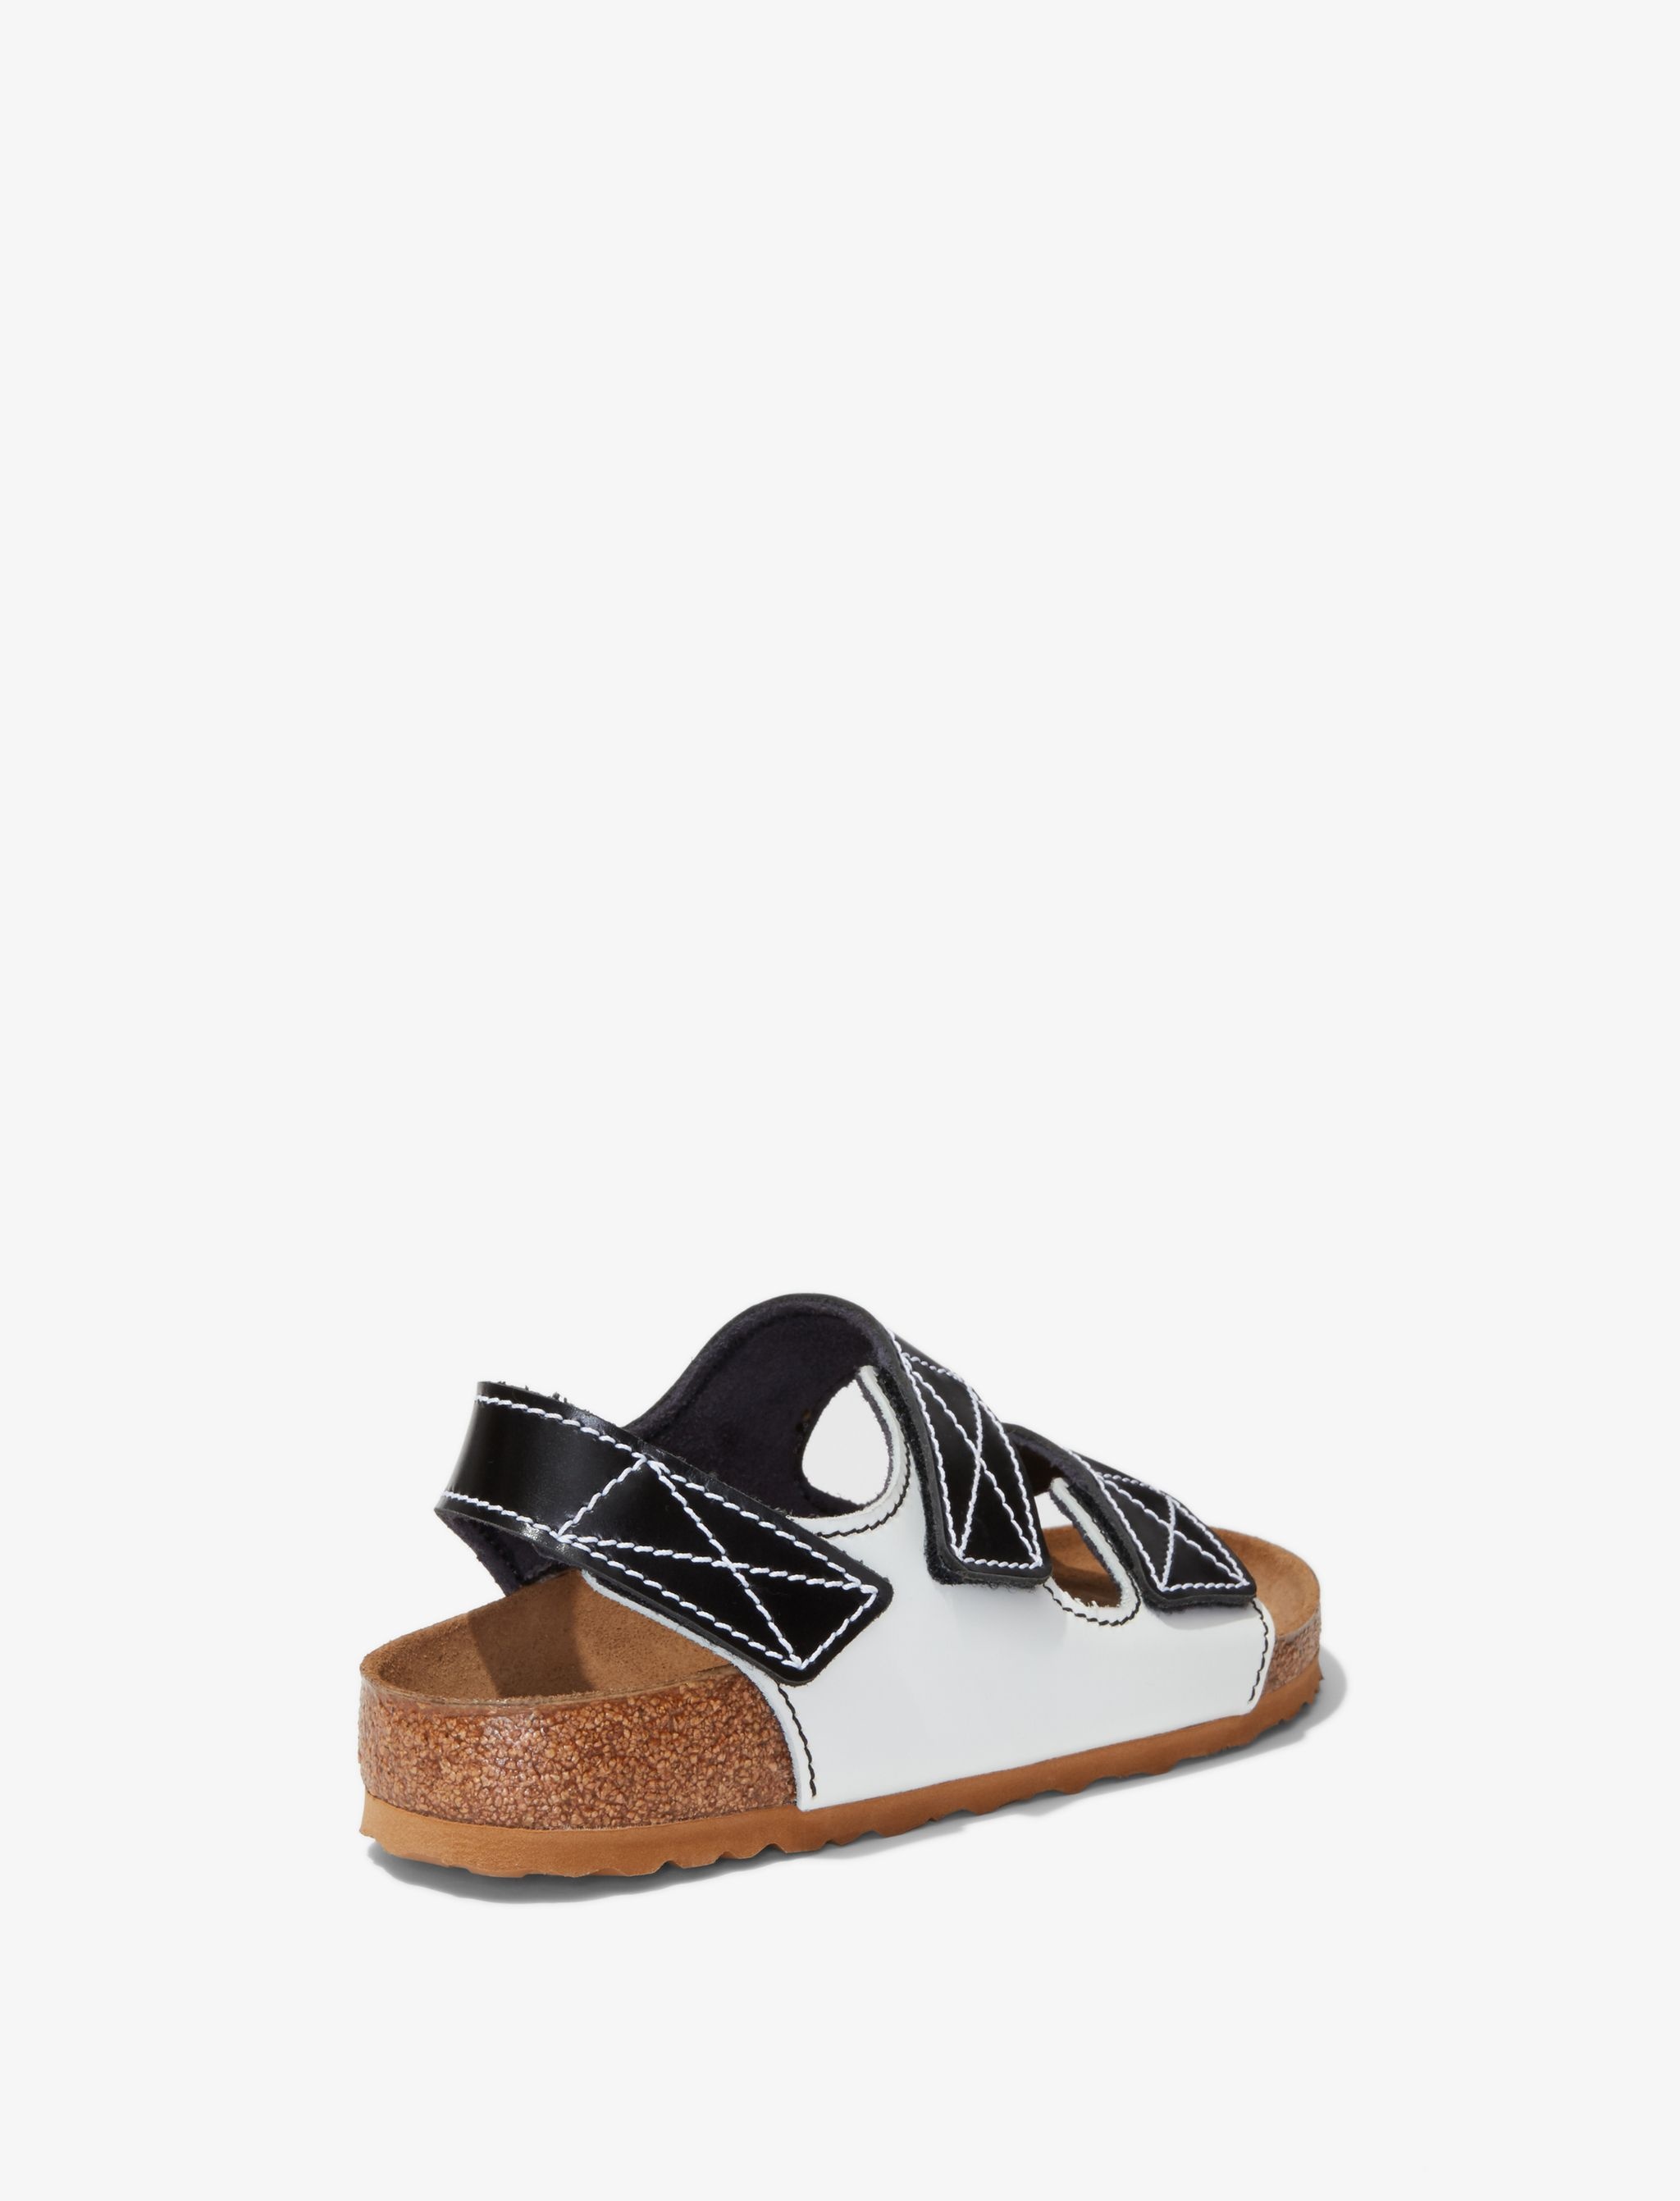 Birkenstock X Proenza Schouler Milano Sandals - 4